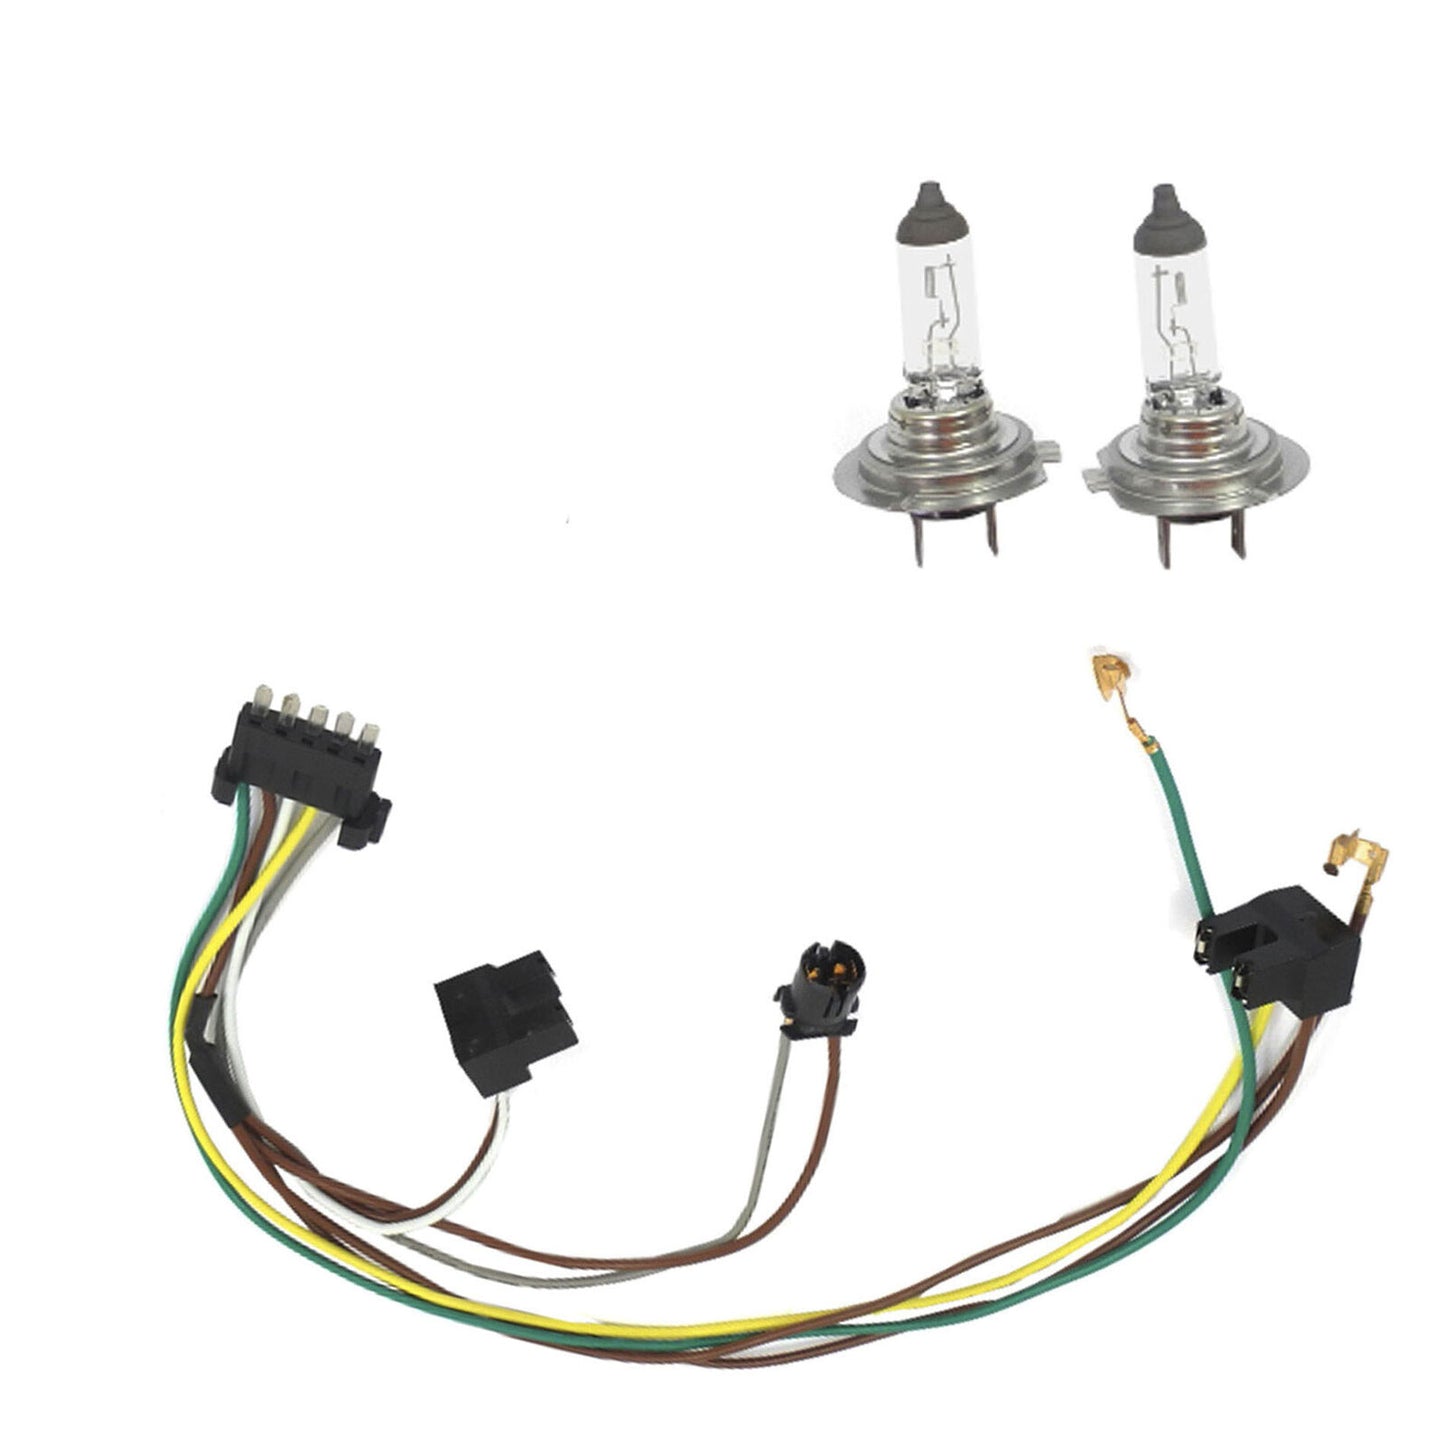 L /R Headlight Wiring Harness & Headlight Bulb H7 70W For Benz C230 2.3L 1.8L